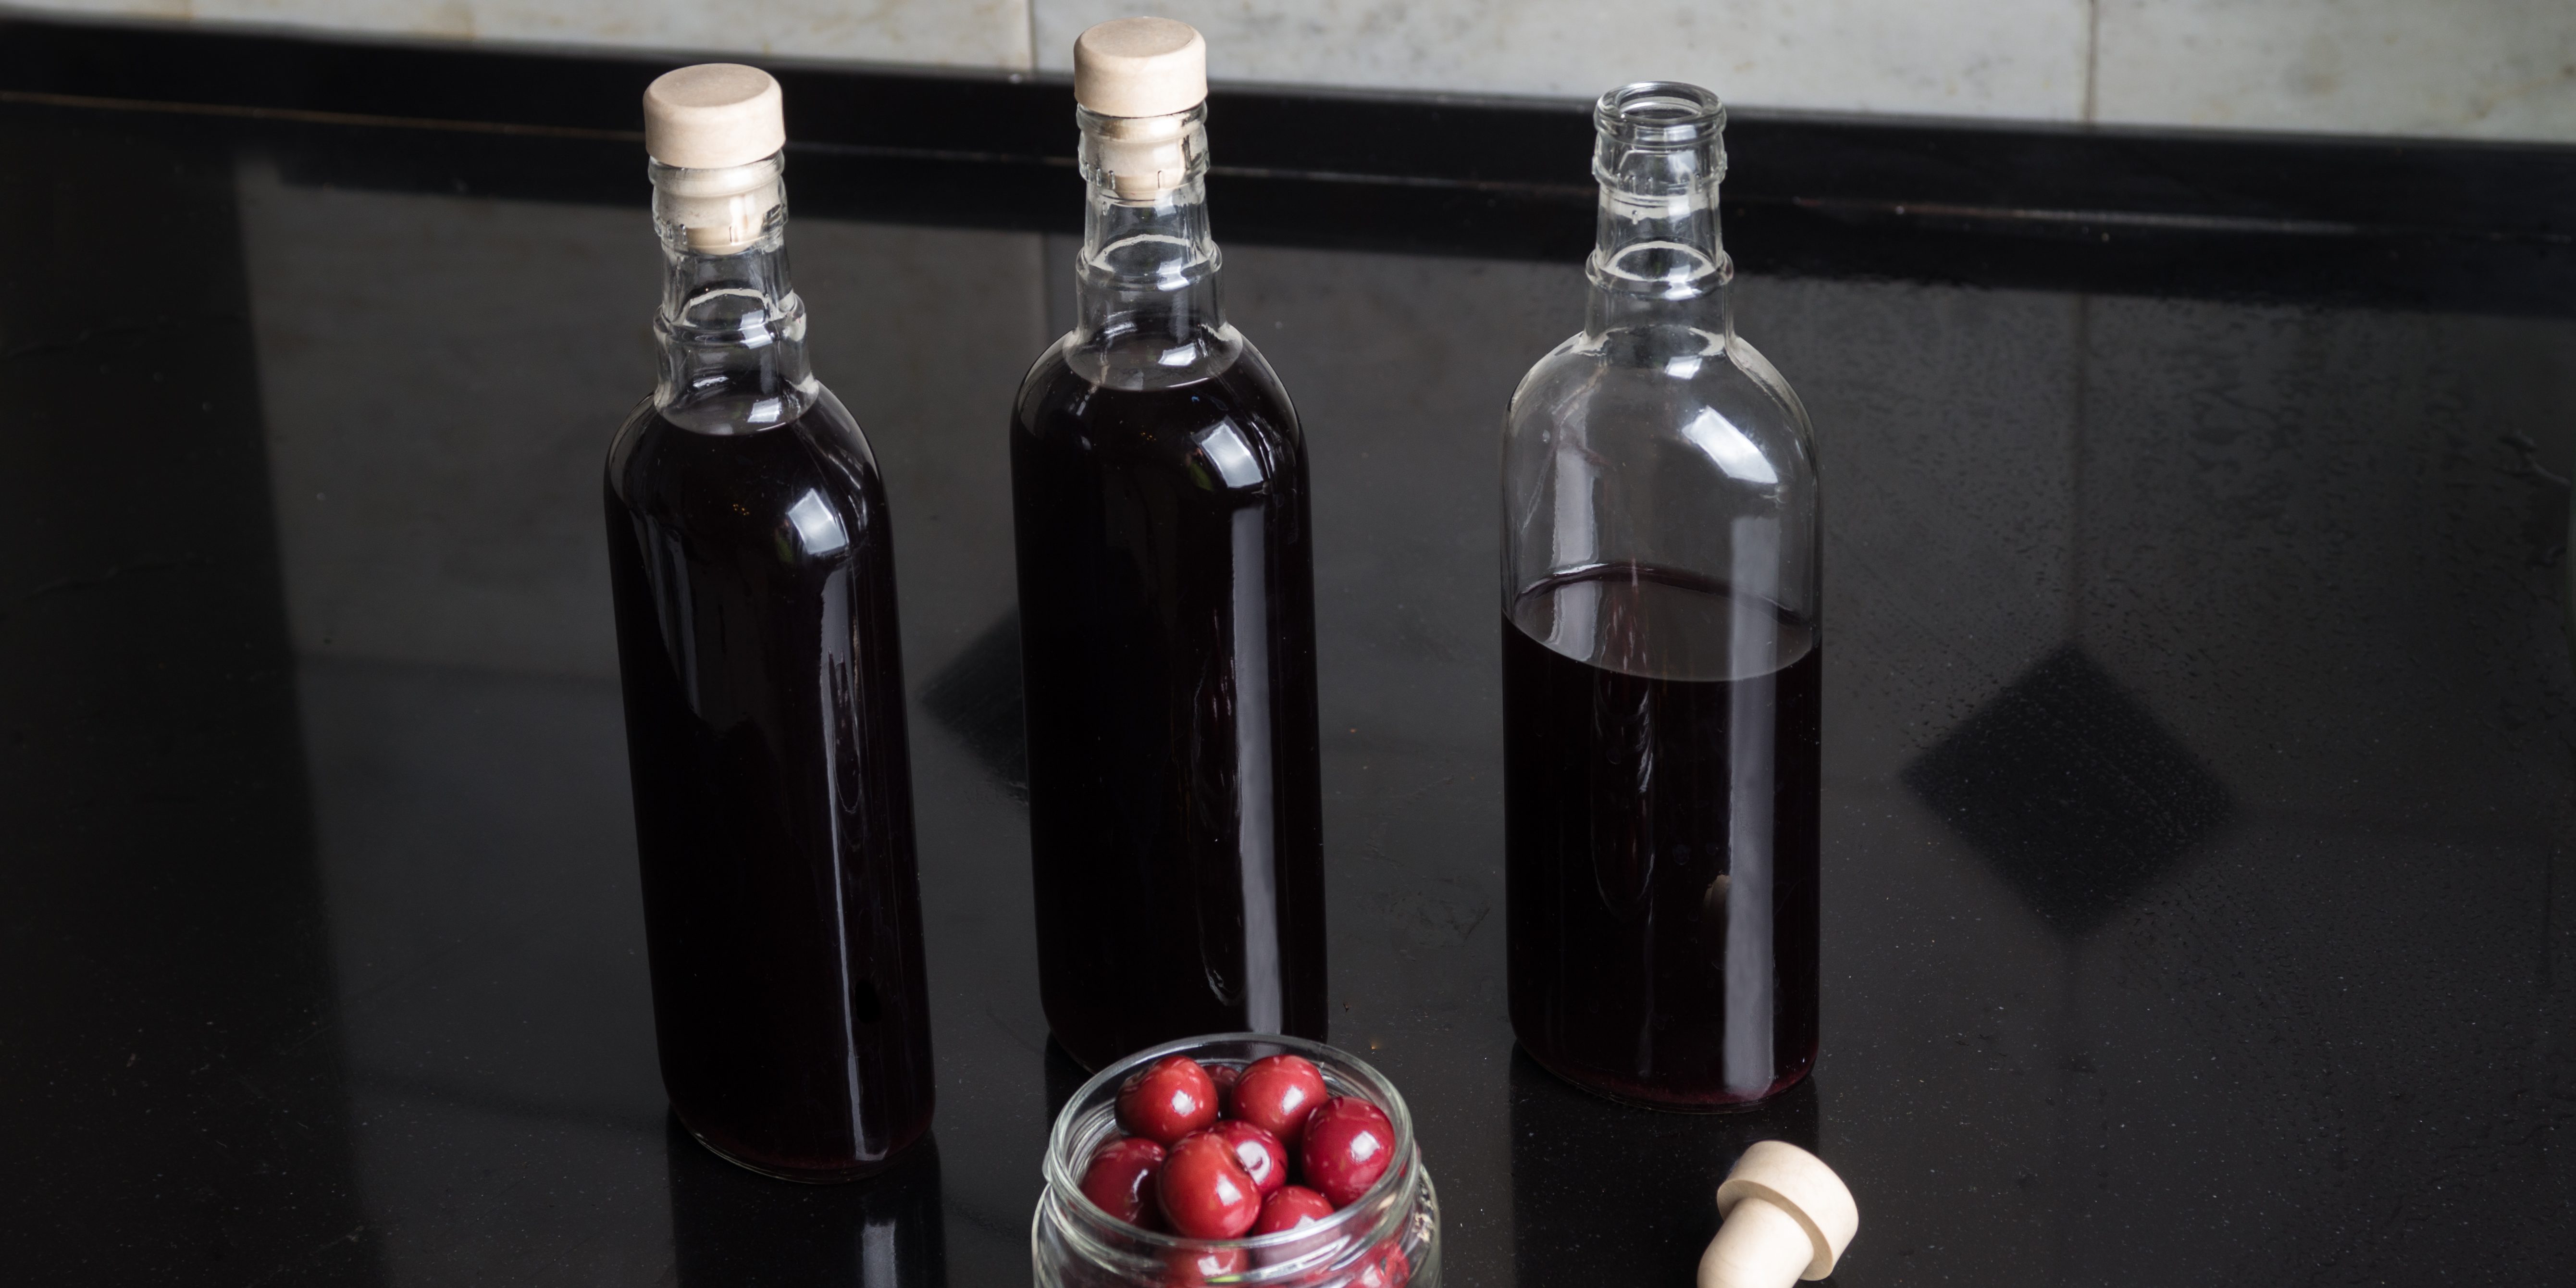 Как подсластить домашнее вино из вишни, черной смородины и малины